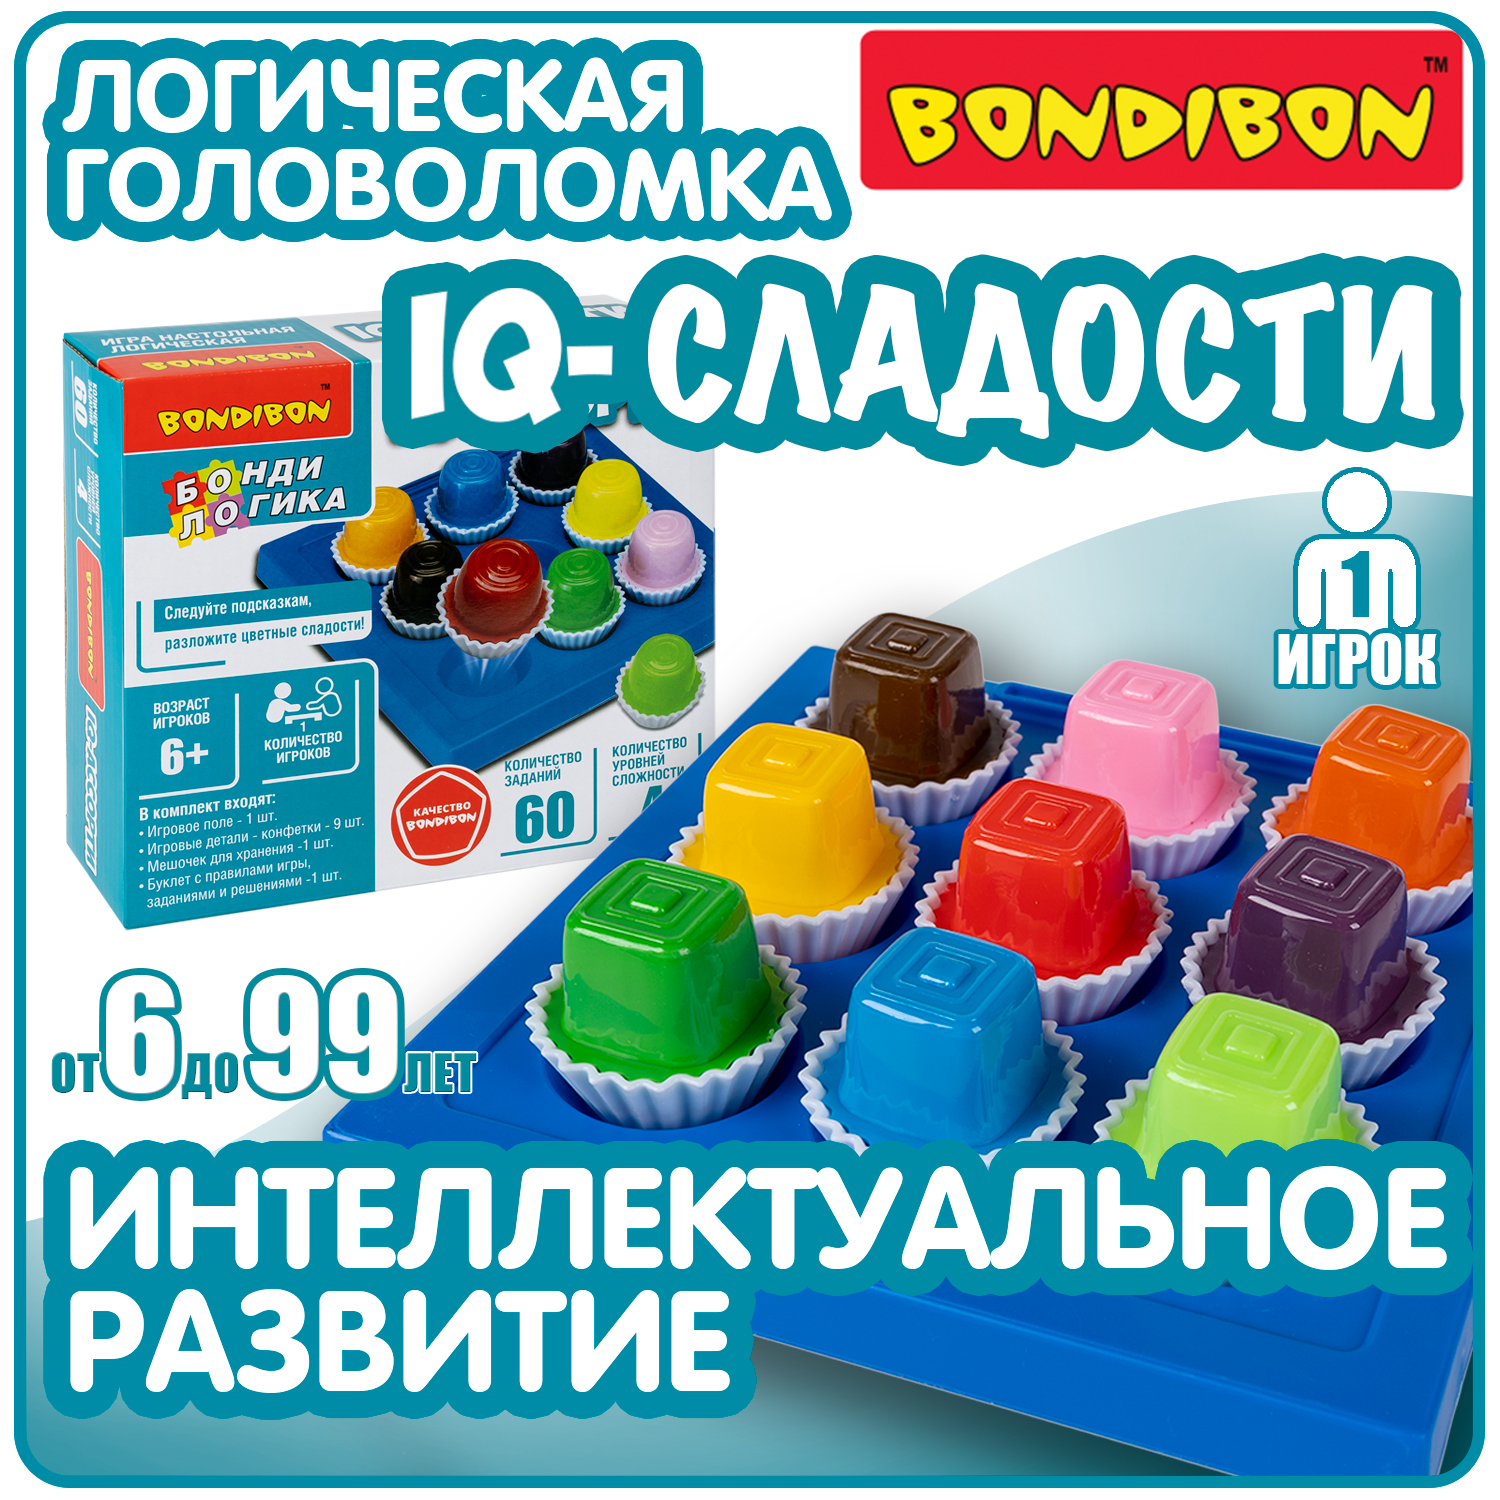 Настольная логическая игра BondibonIQ-СЛАДОСТИ квадратные конфеты развивающая головоломка случай в парке детективный квест головоломка